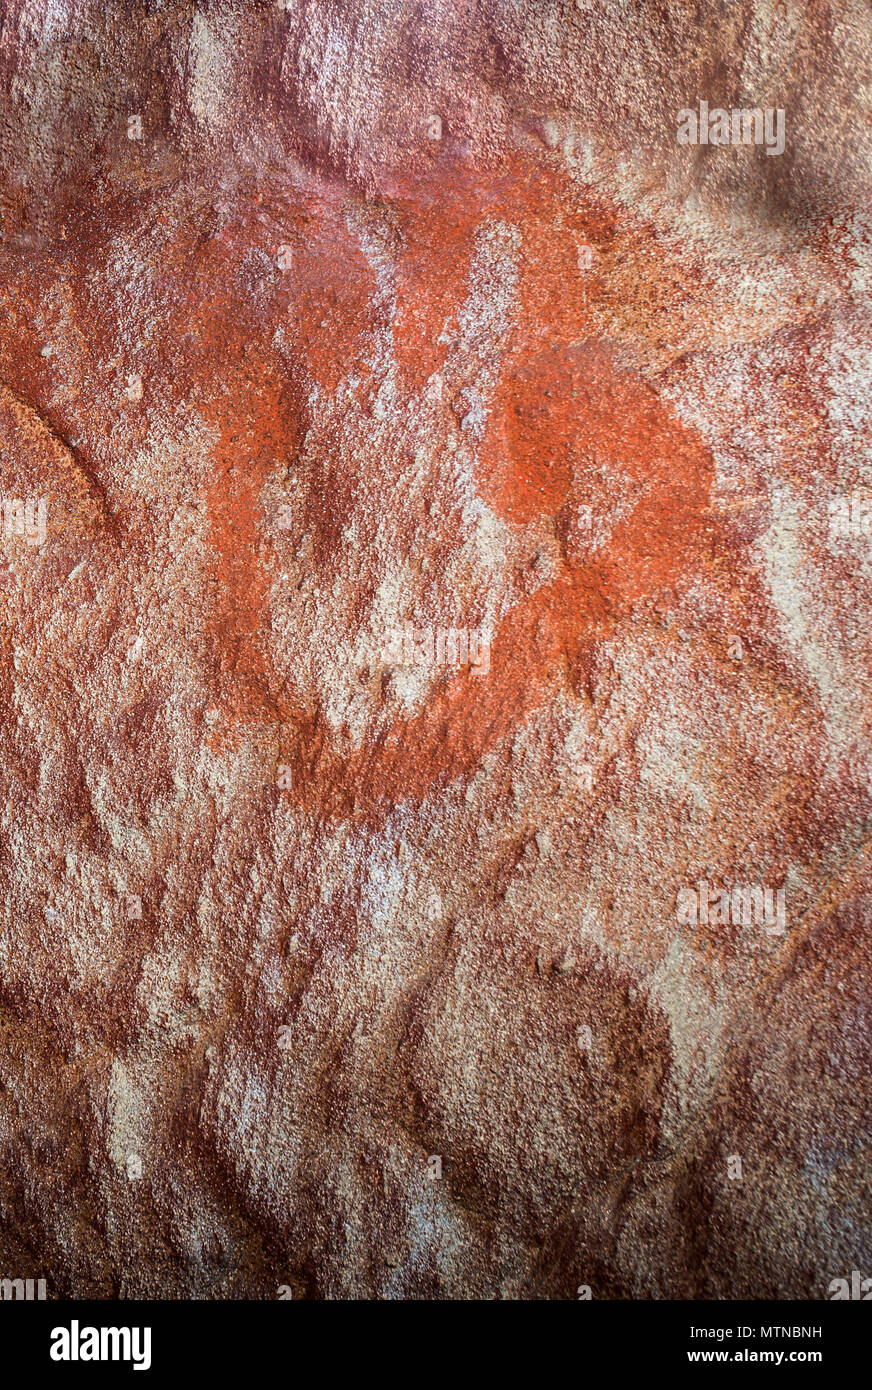 Cáceres, España - 27 de mayo de 2018: la cueva de Maltravieso réplica con los Neandertales cuatro dedos de la mano las impresiones, Cáceres, España Foto de stock